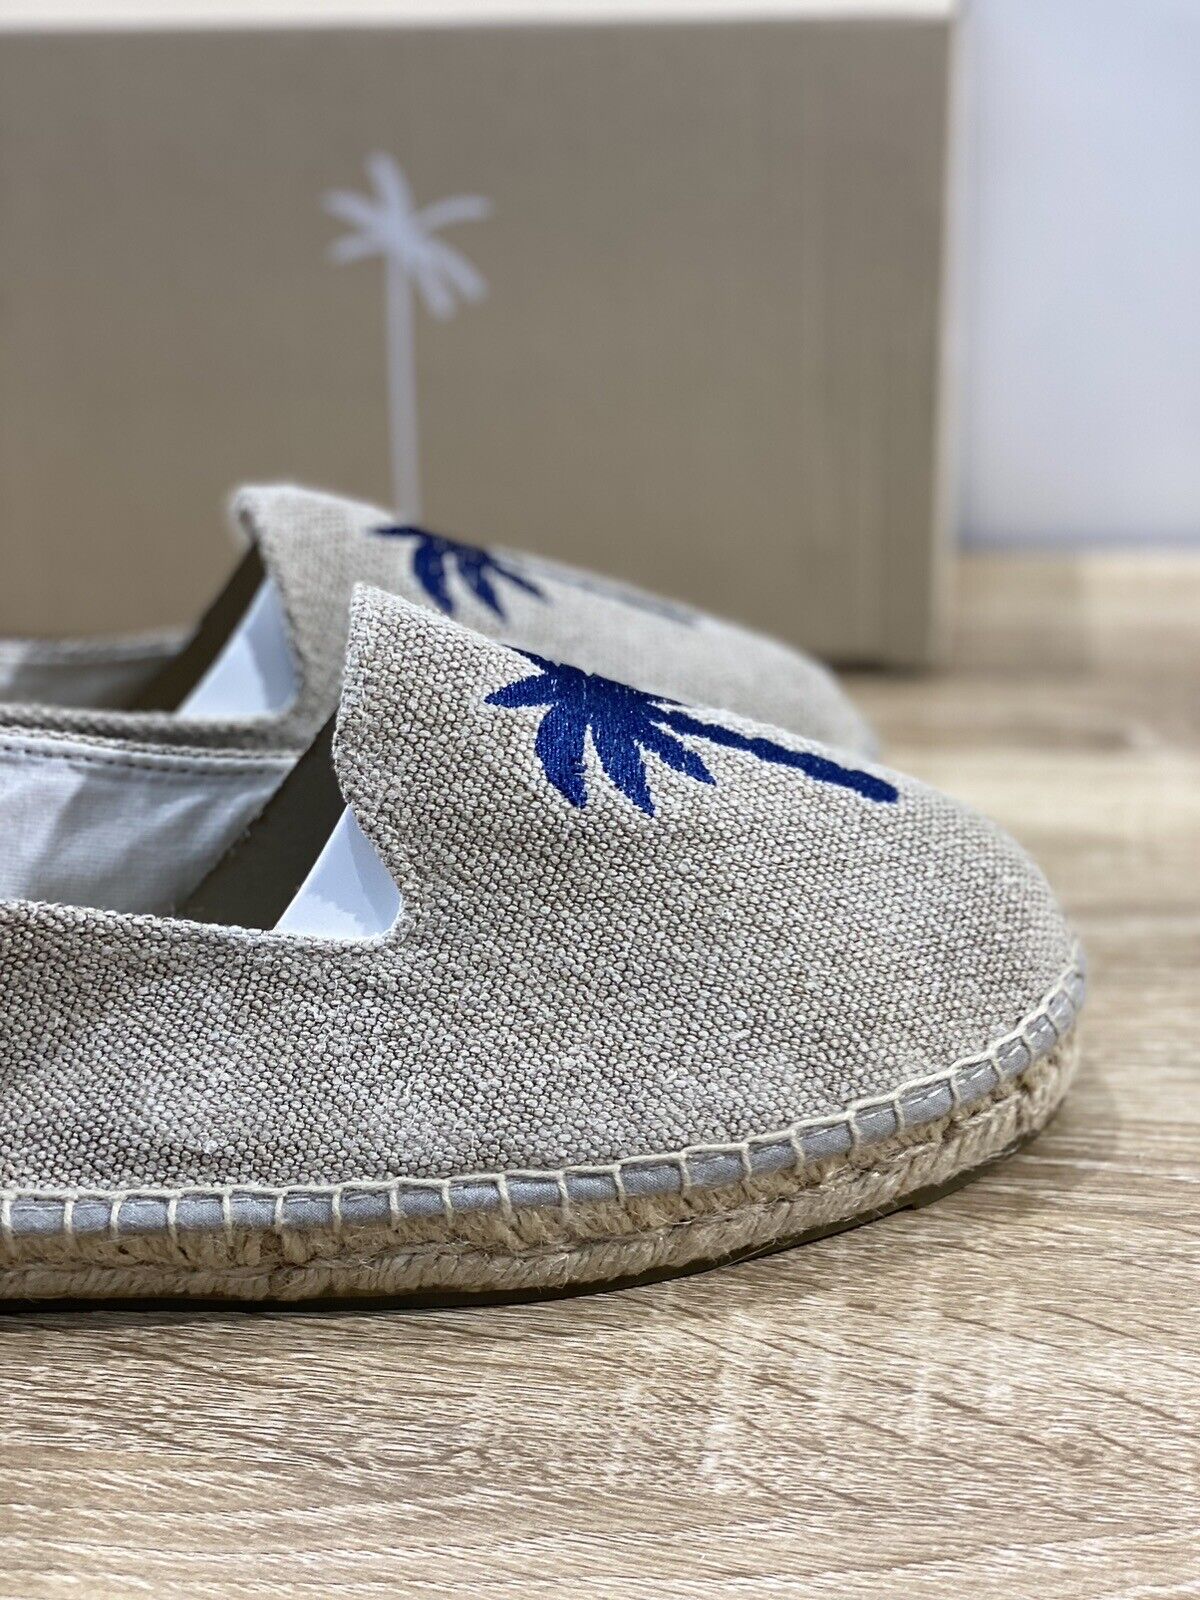 Manebi’ Uomo Espadrilles Mocassino Sand Casual Summer Shoes 46